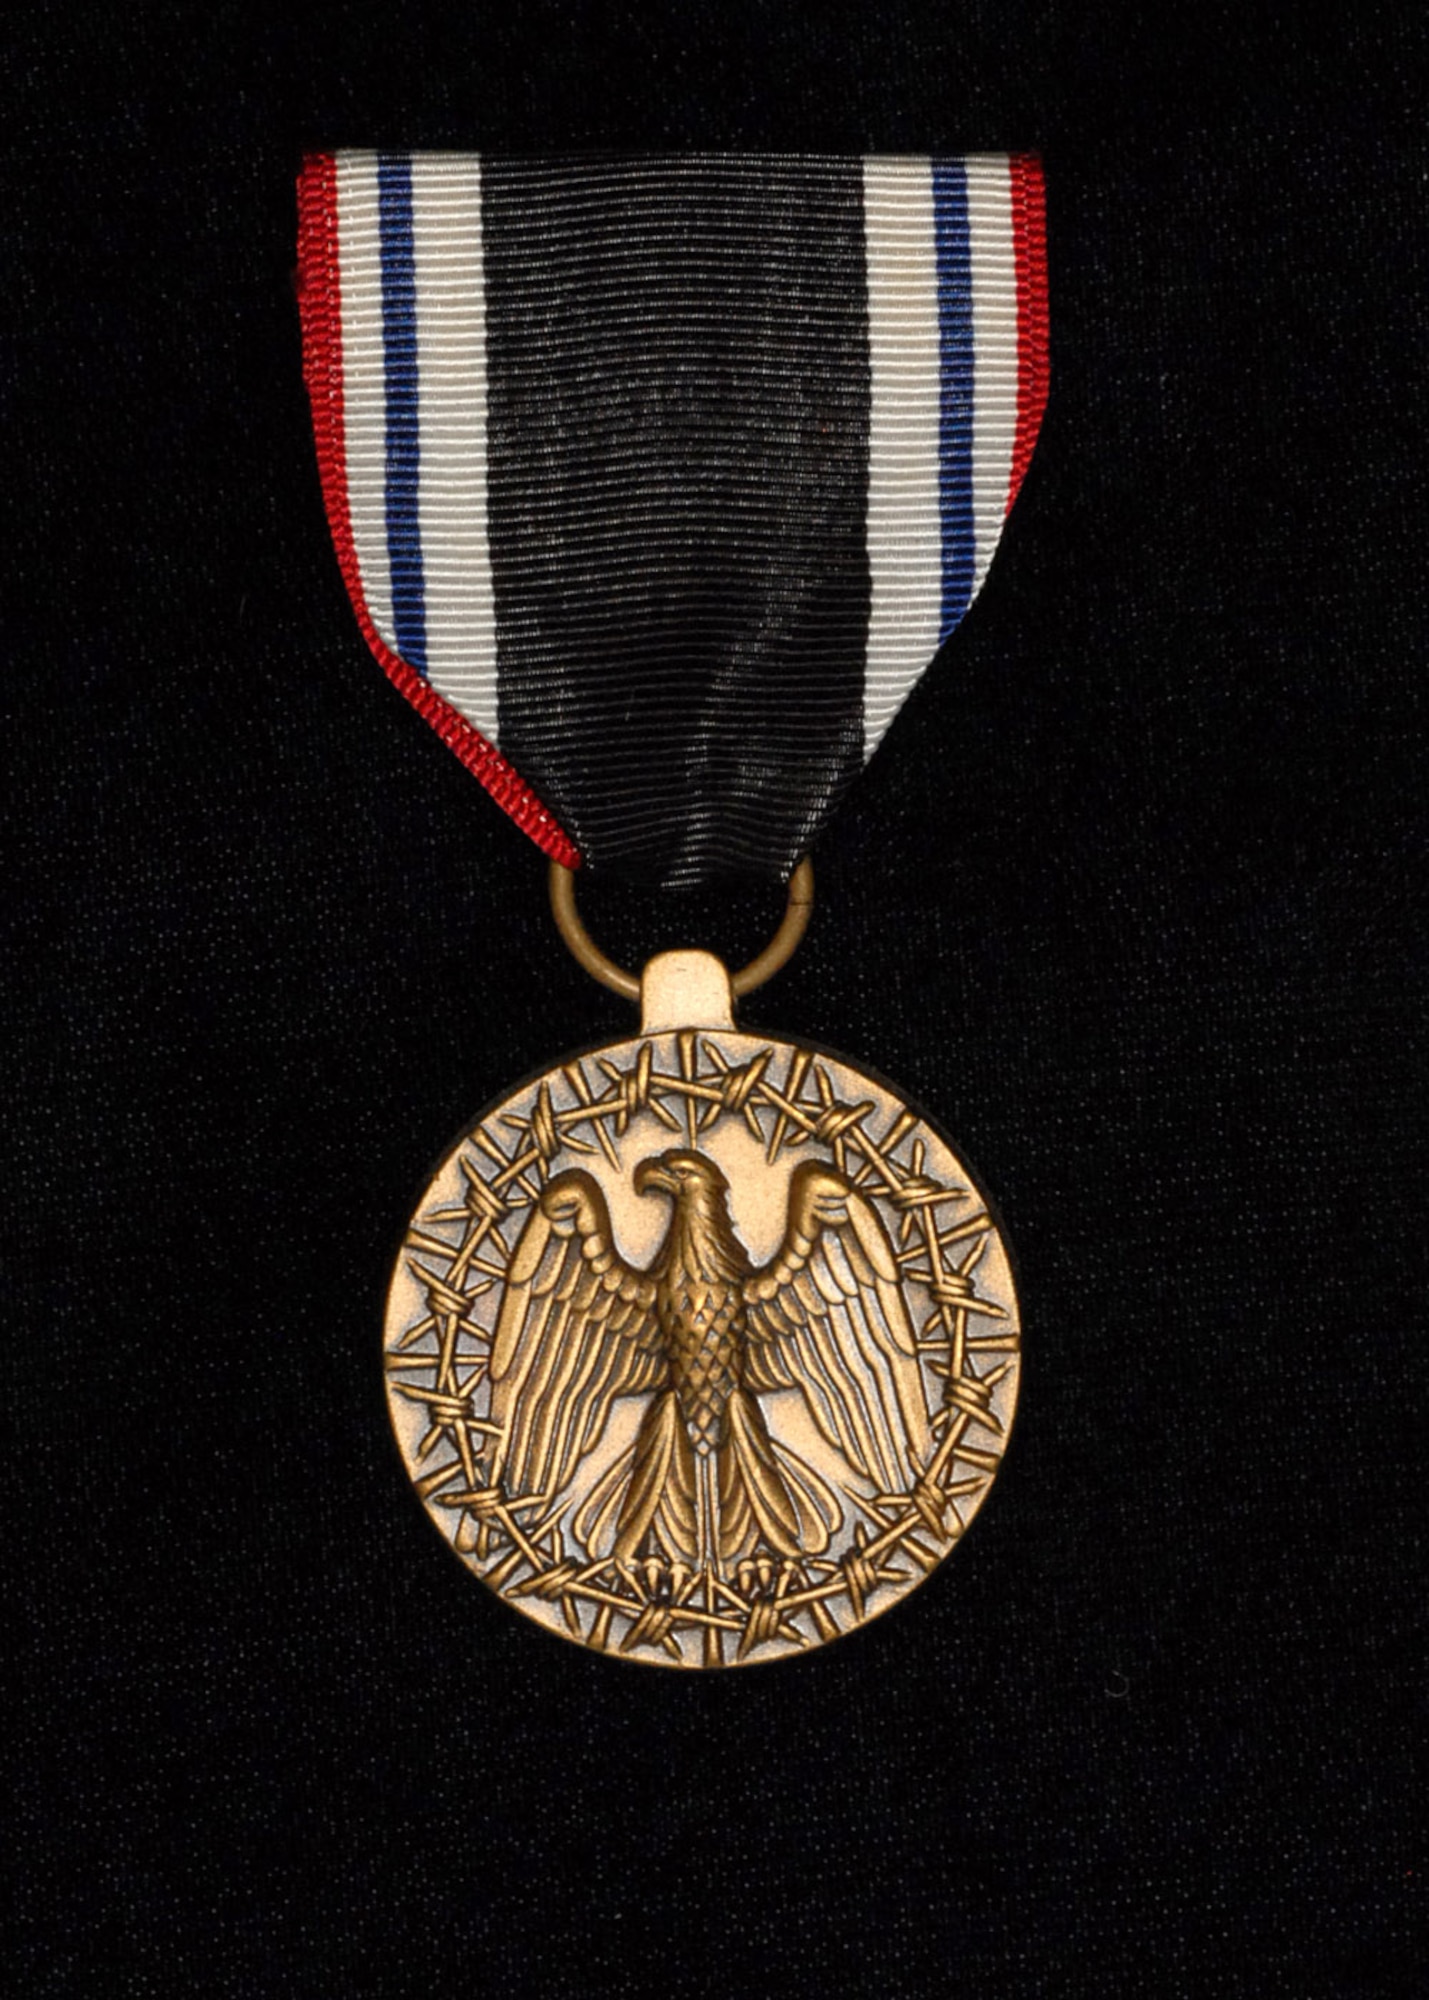 Prisoner of War Medal. (Photo by Mr. Steve White)